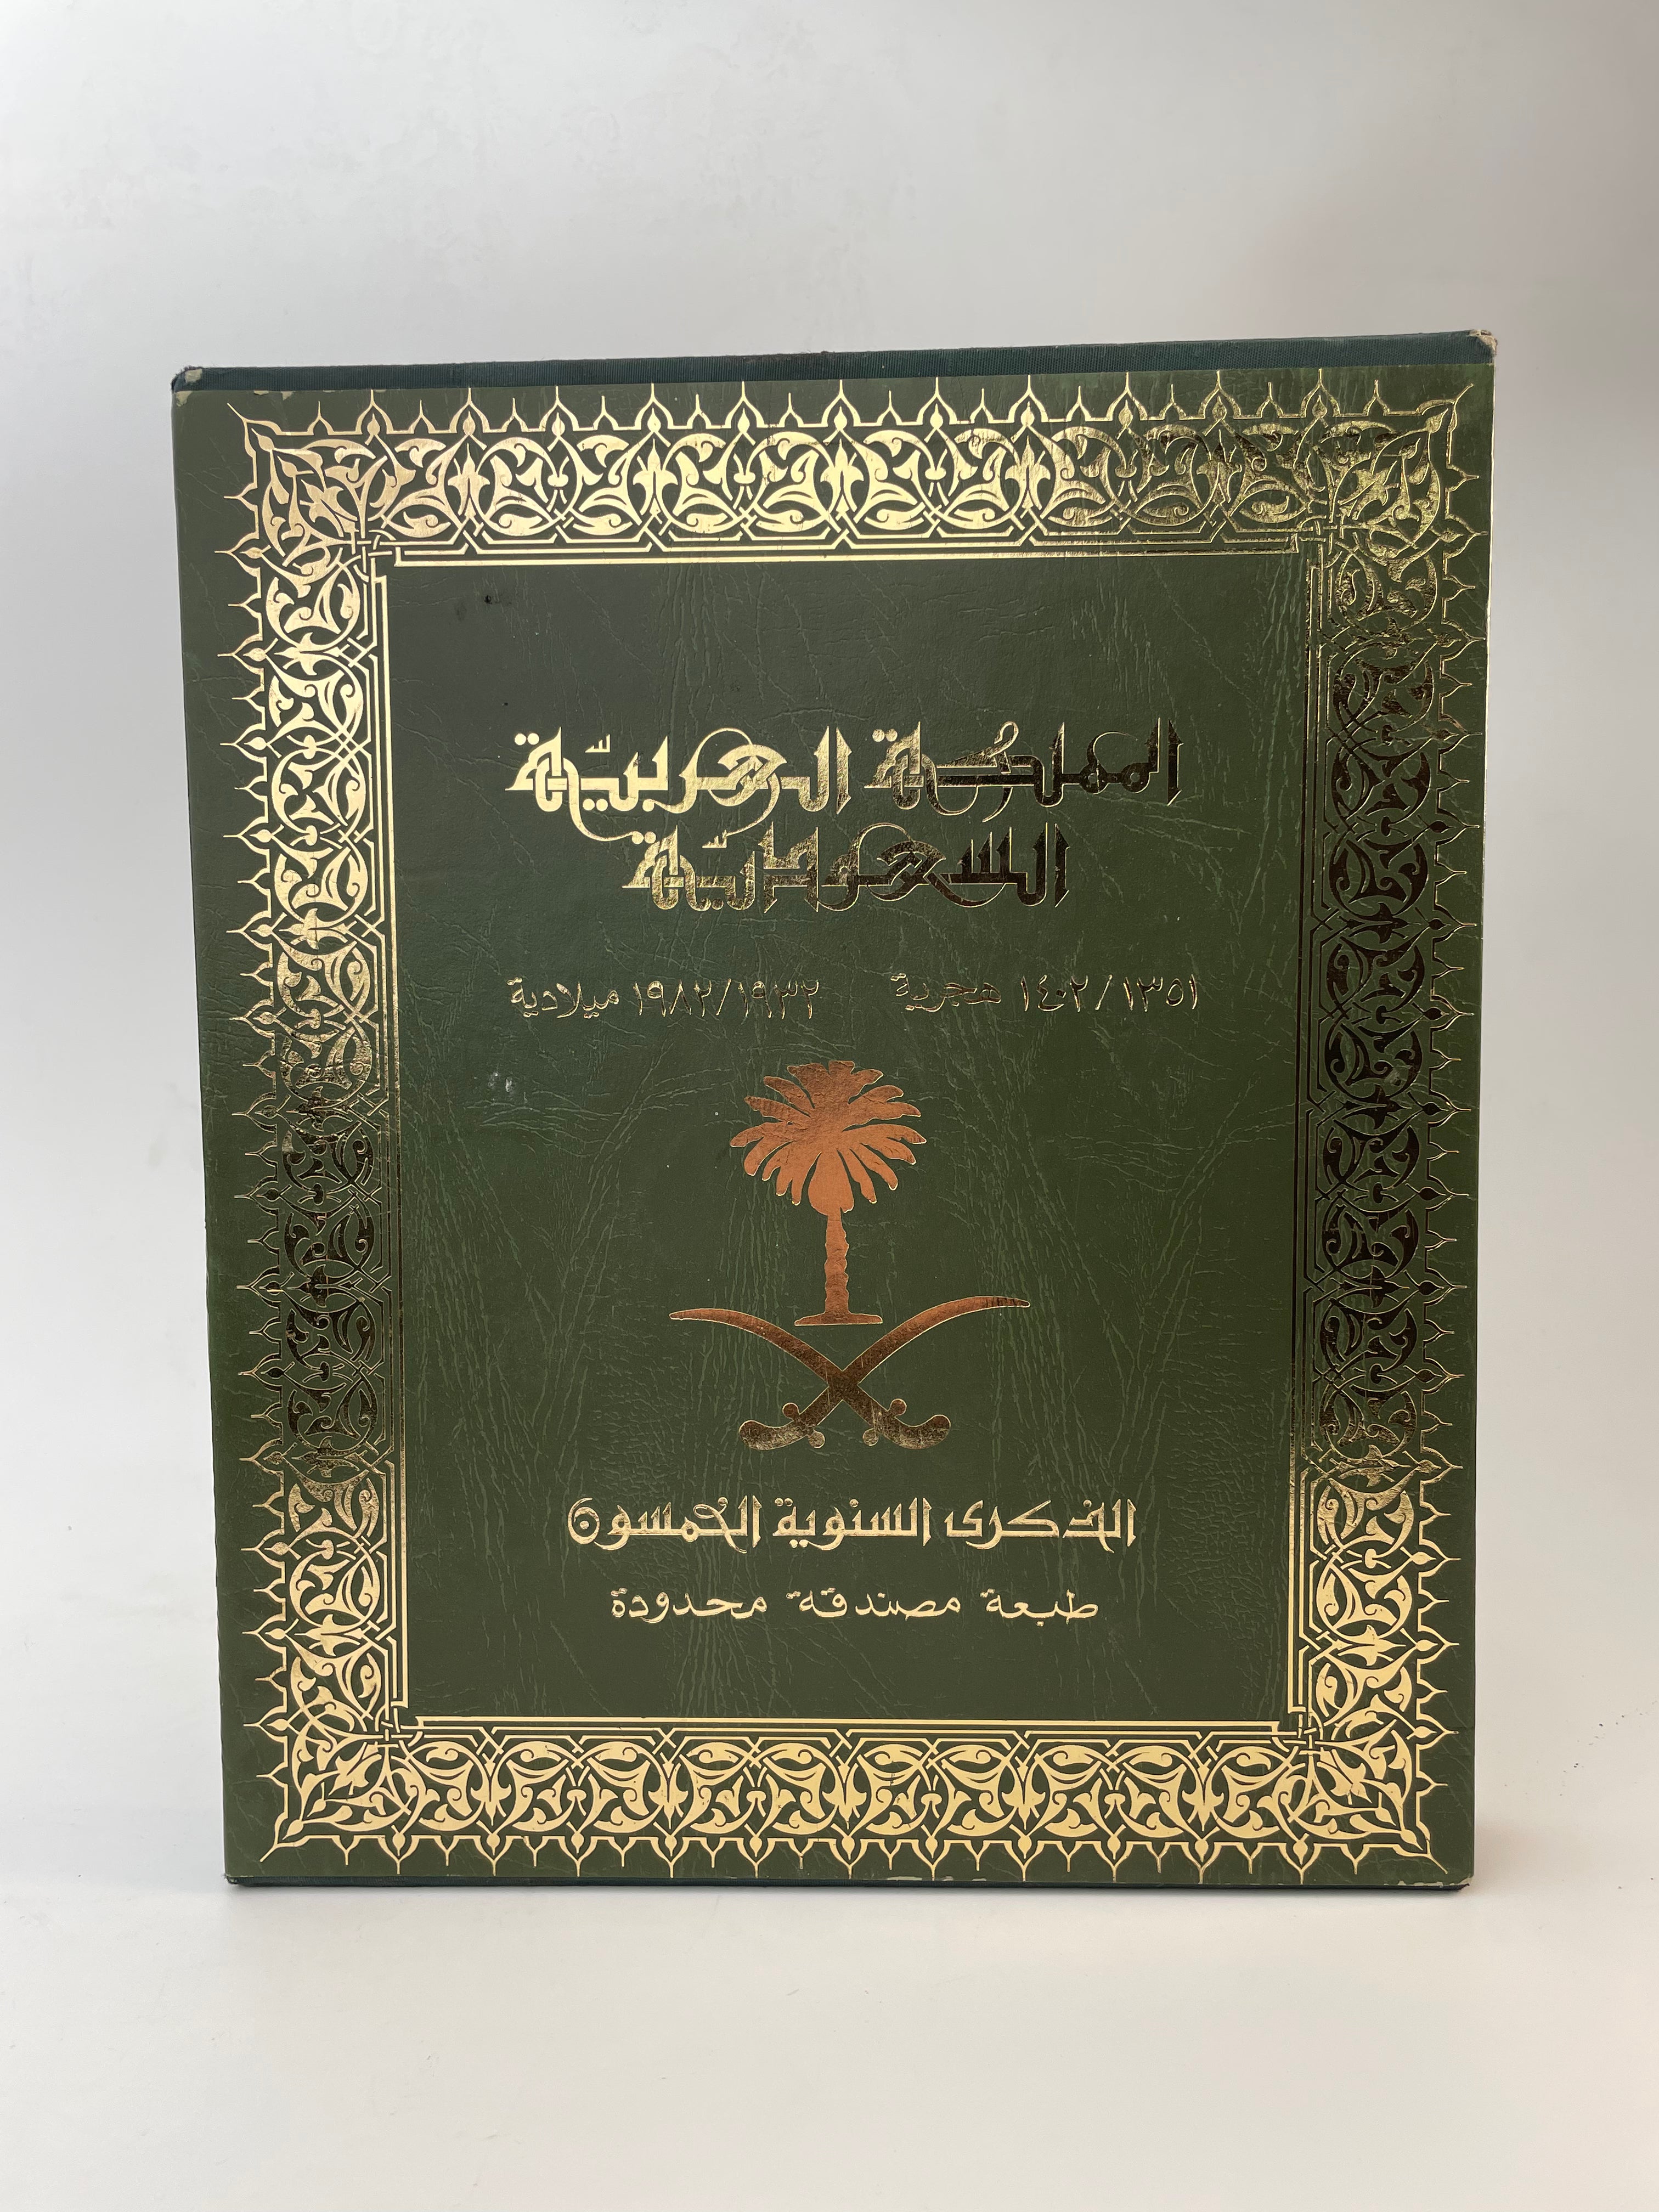 Coffret édition limitée du 50e anniversaire du Royaume d'Arabie Saoudite